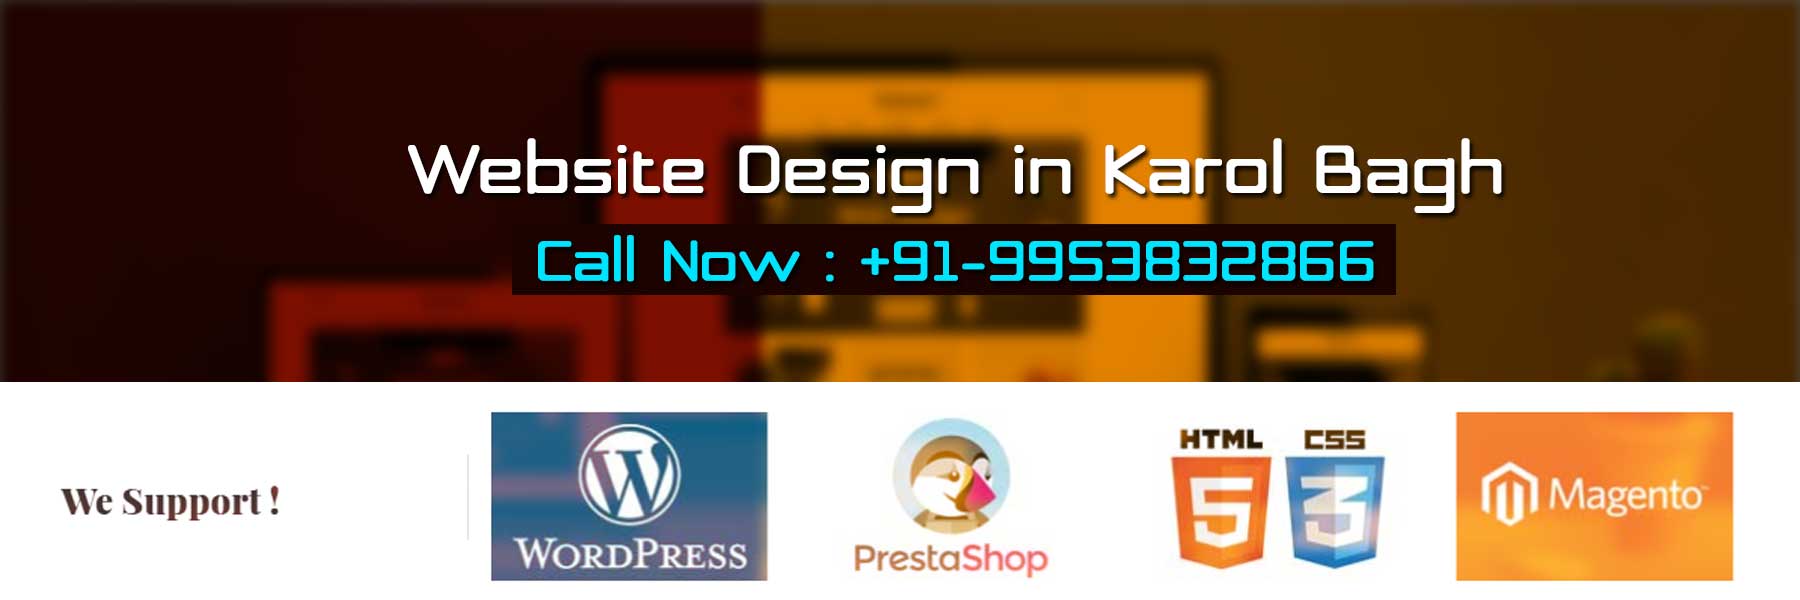 Website Design in Karol Bagh